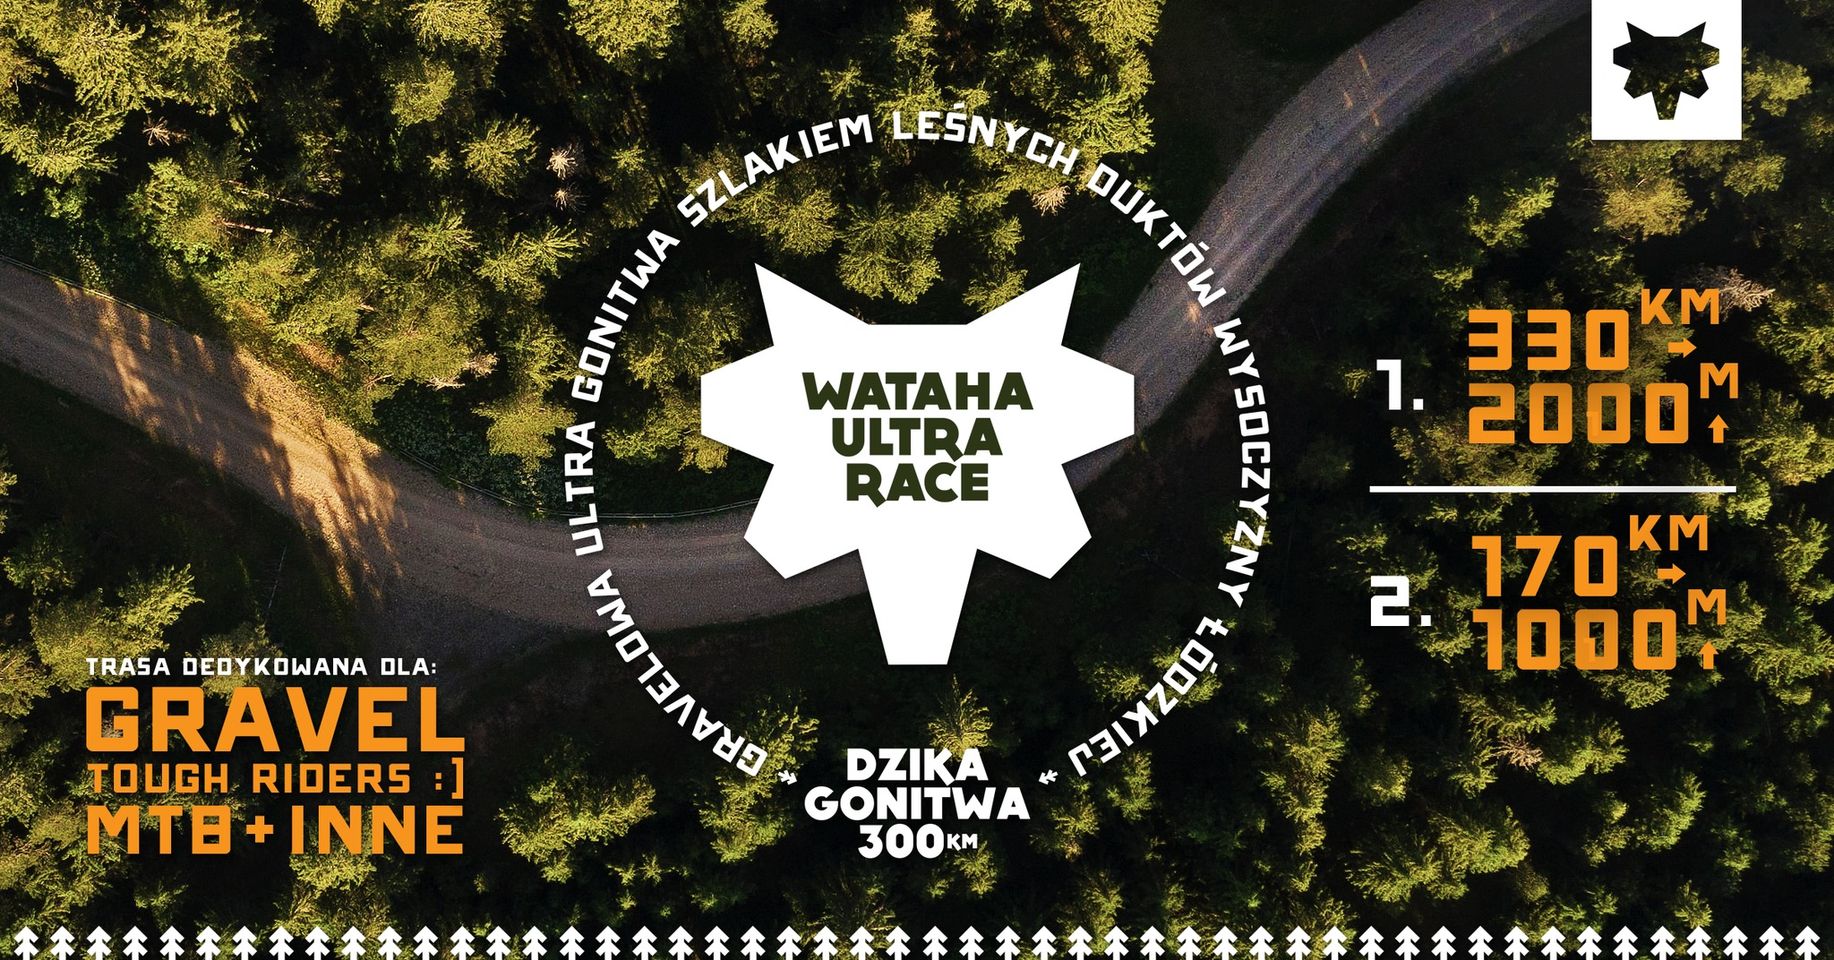 Wataha Ultra Race – Dzika Gonitwa 300